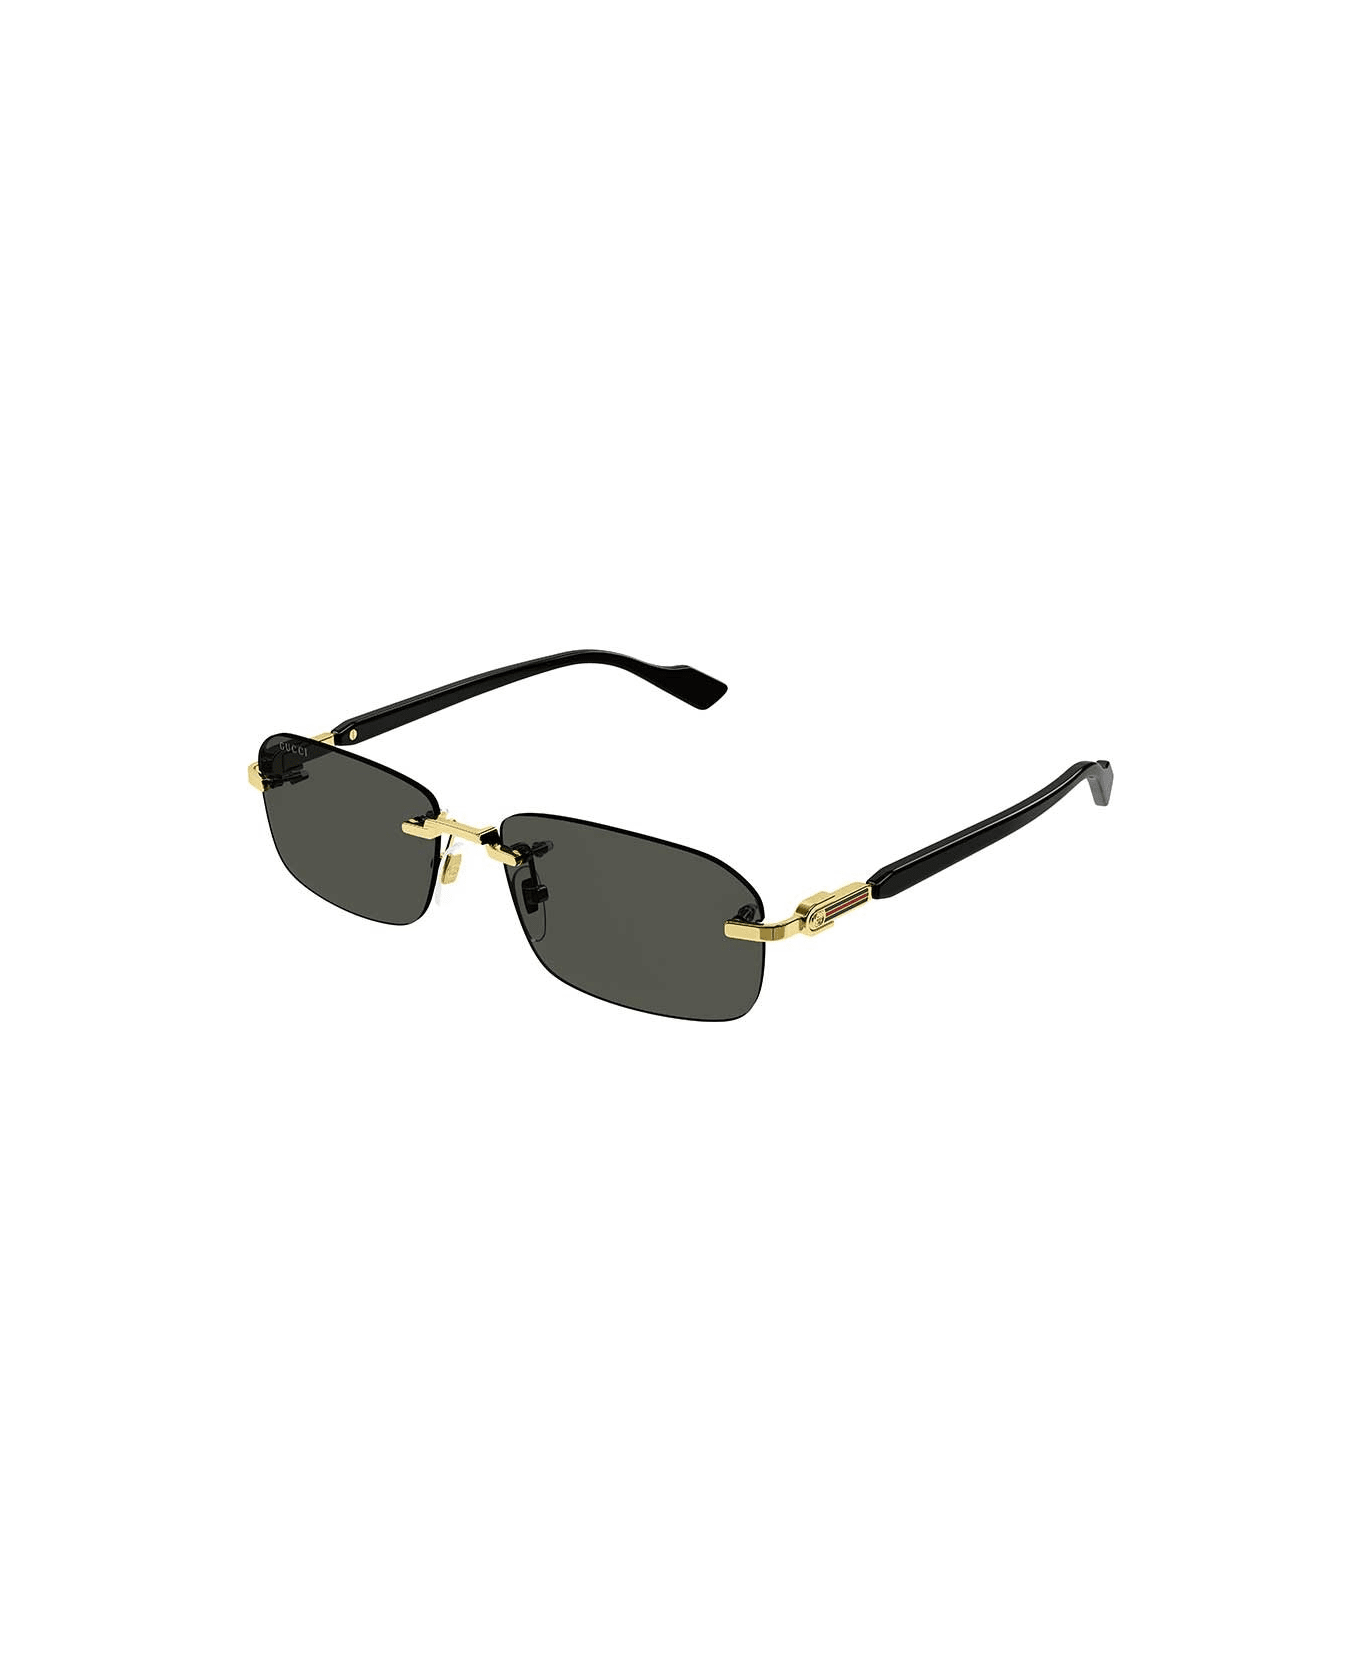 Gucci Eyewear Sunglasses - Grigio/Grigio サングラス